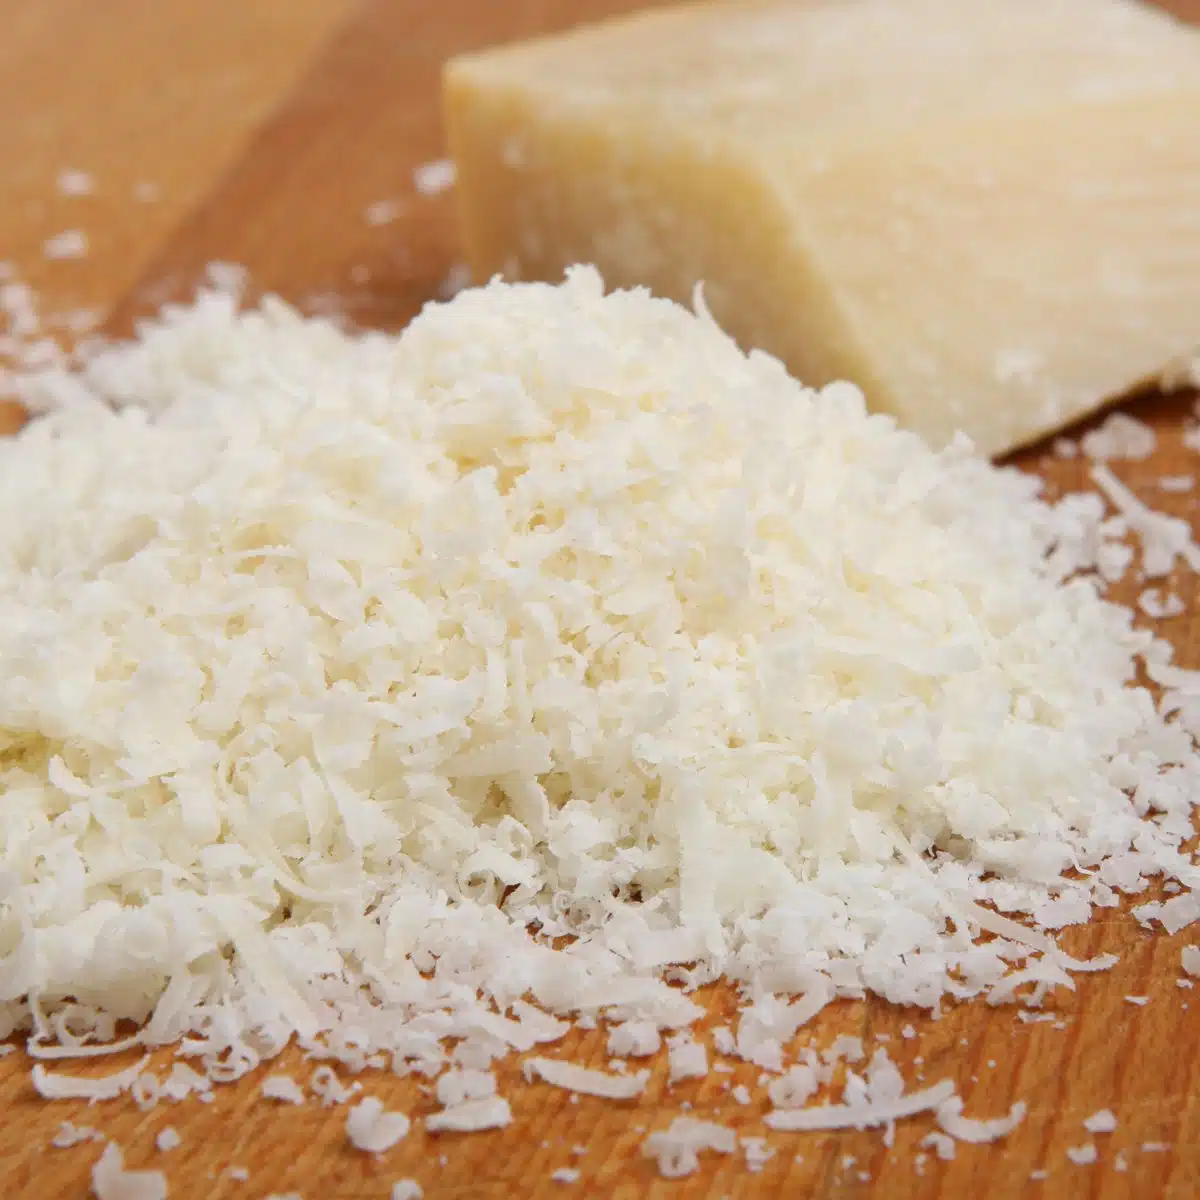 Immagine quadrata di formaggio romano grattugiato.